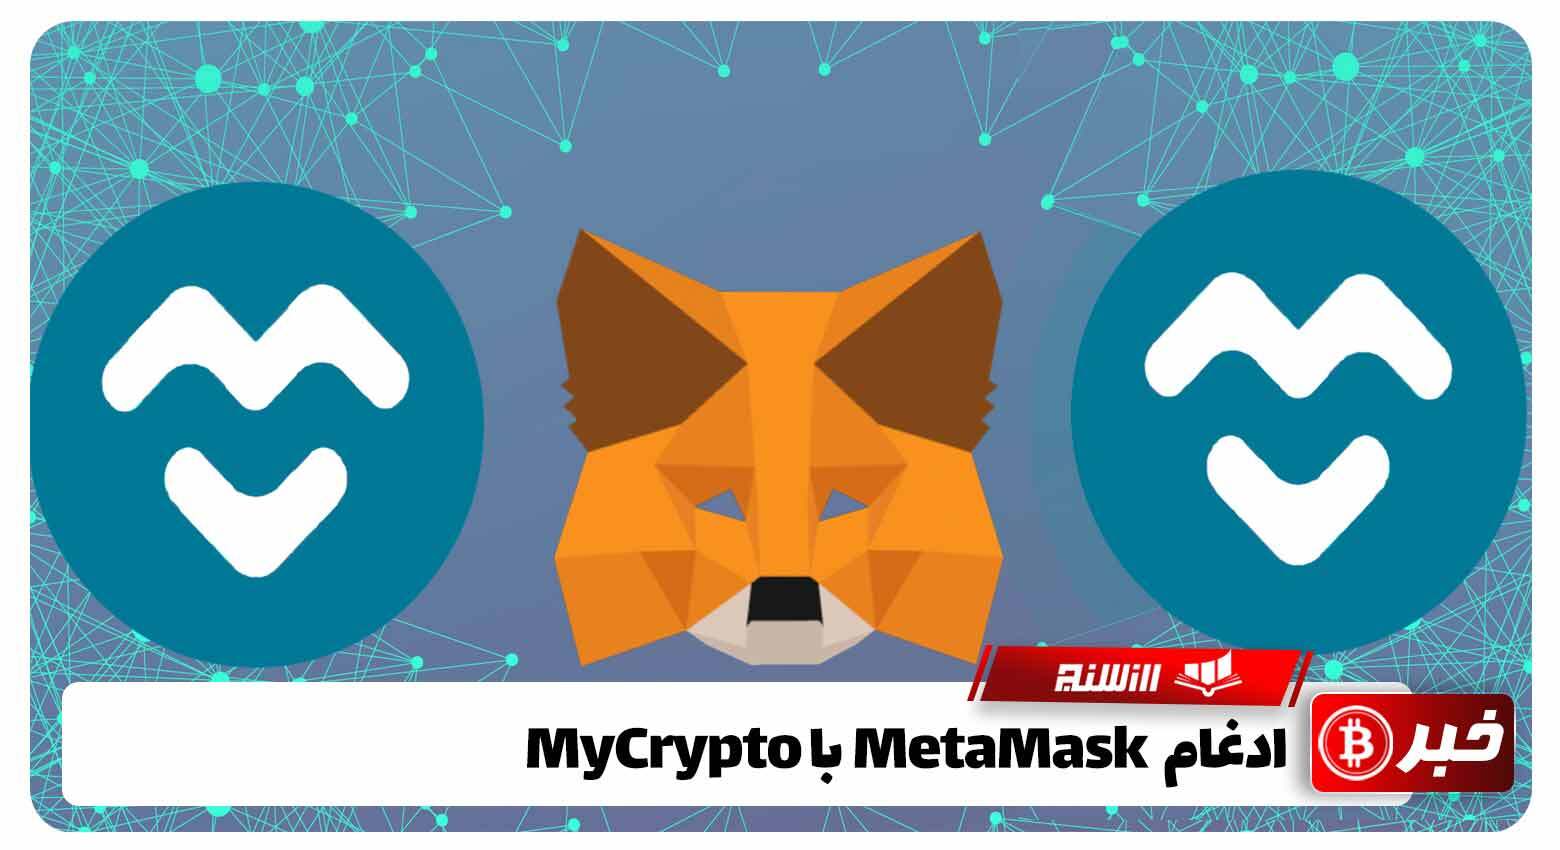 ادغام MetaMaskبا MyCrypto 